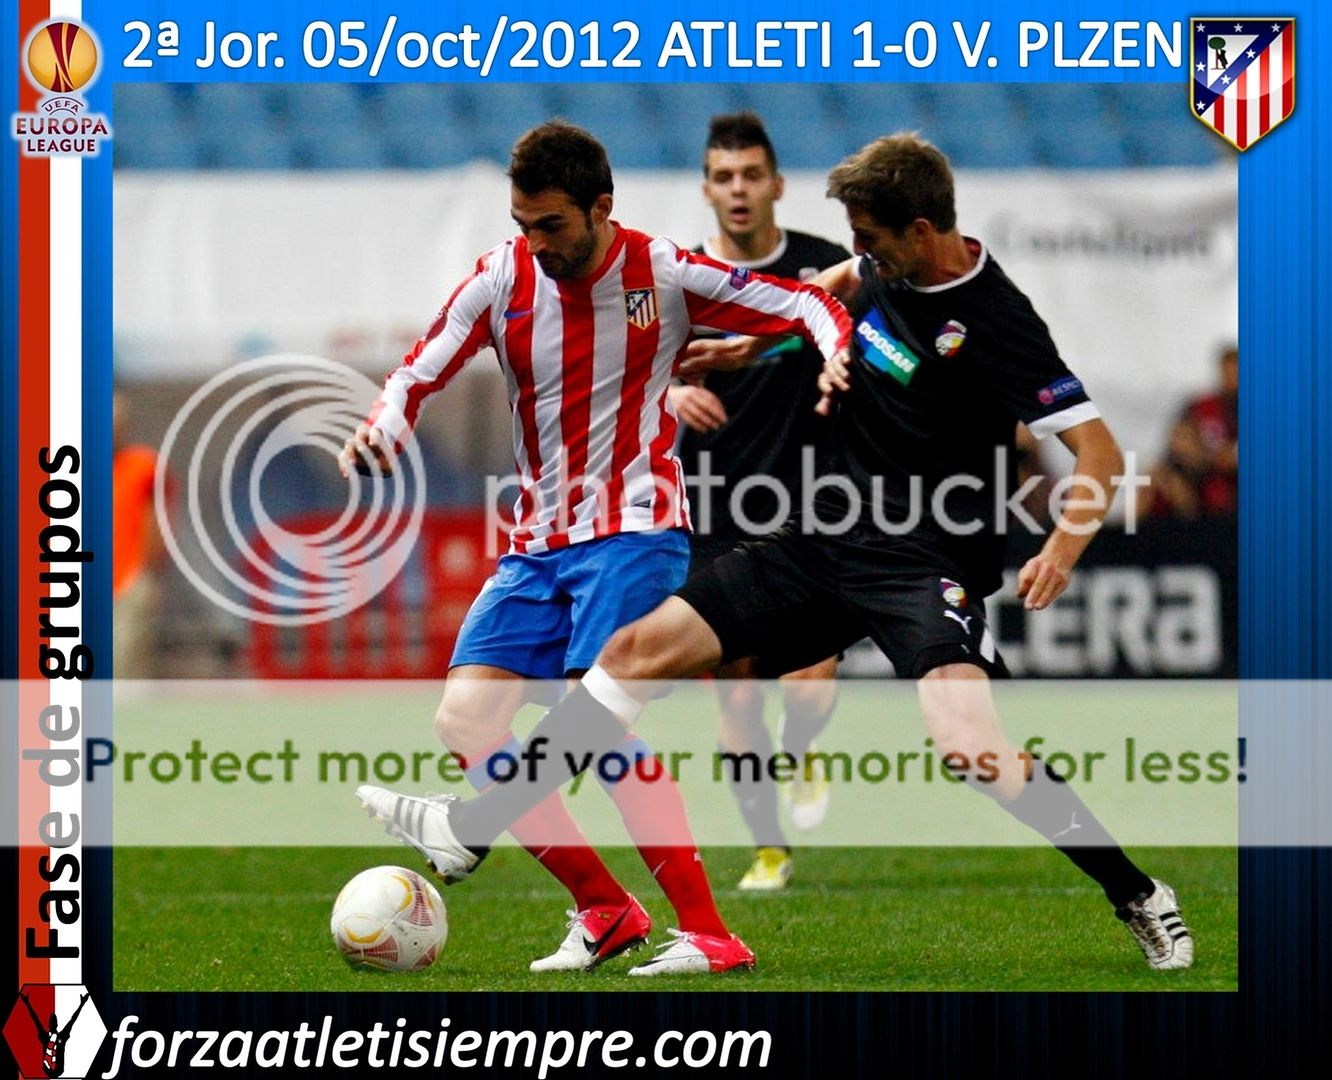 2ª Jor. UEFA E. L. 2012/13 ATLETI 1-0 V. Plzen - Un fogonazo en medio de... 031Copiar